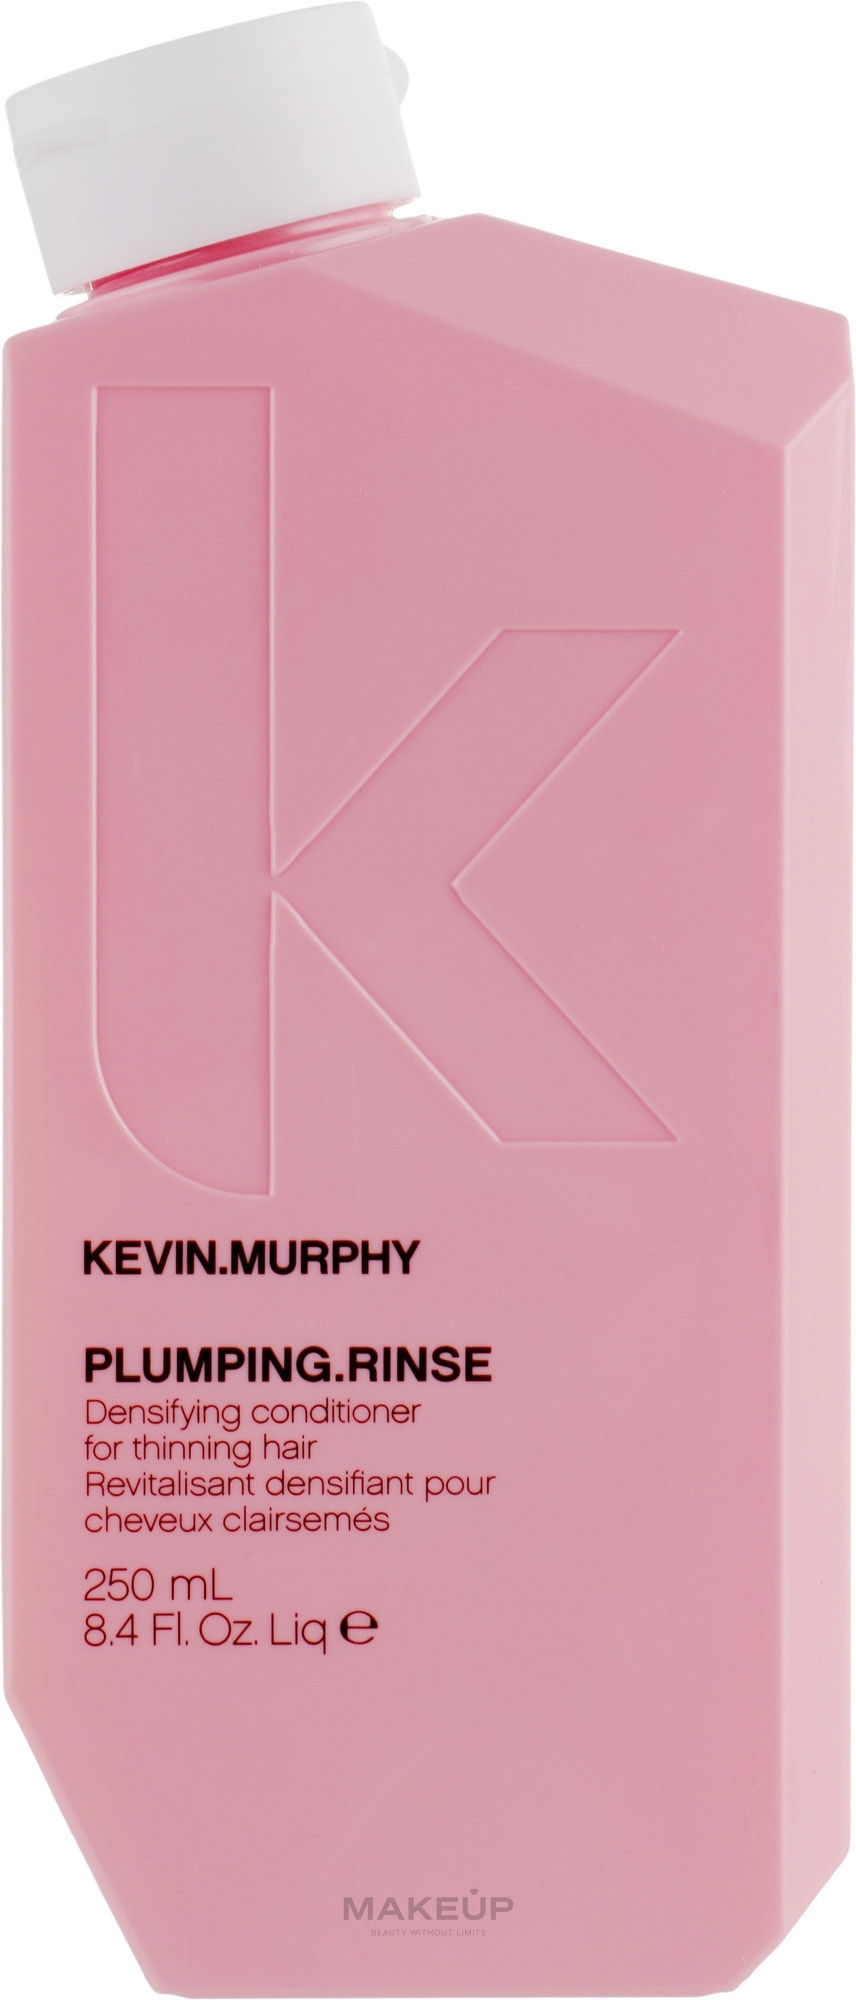 Odżywka dodająca włosom objętości - Kevin.Murphy Plumping.Rinse Densifying Conditioner — Zdjęcie 250 ml